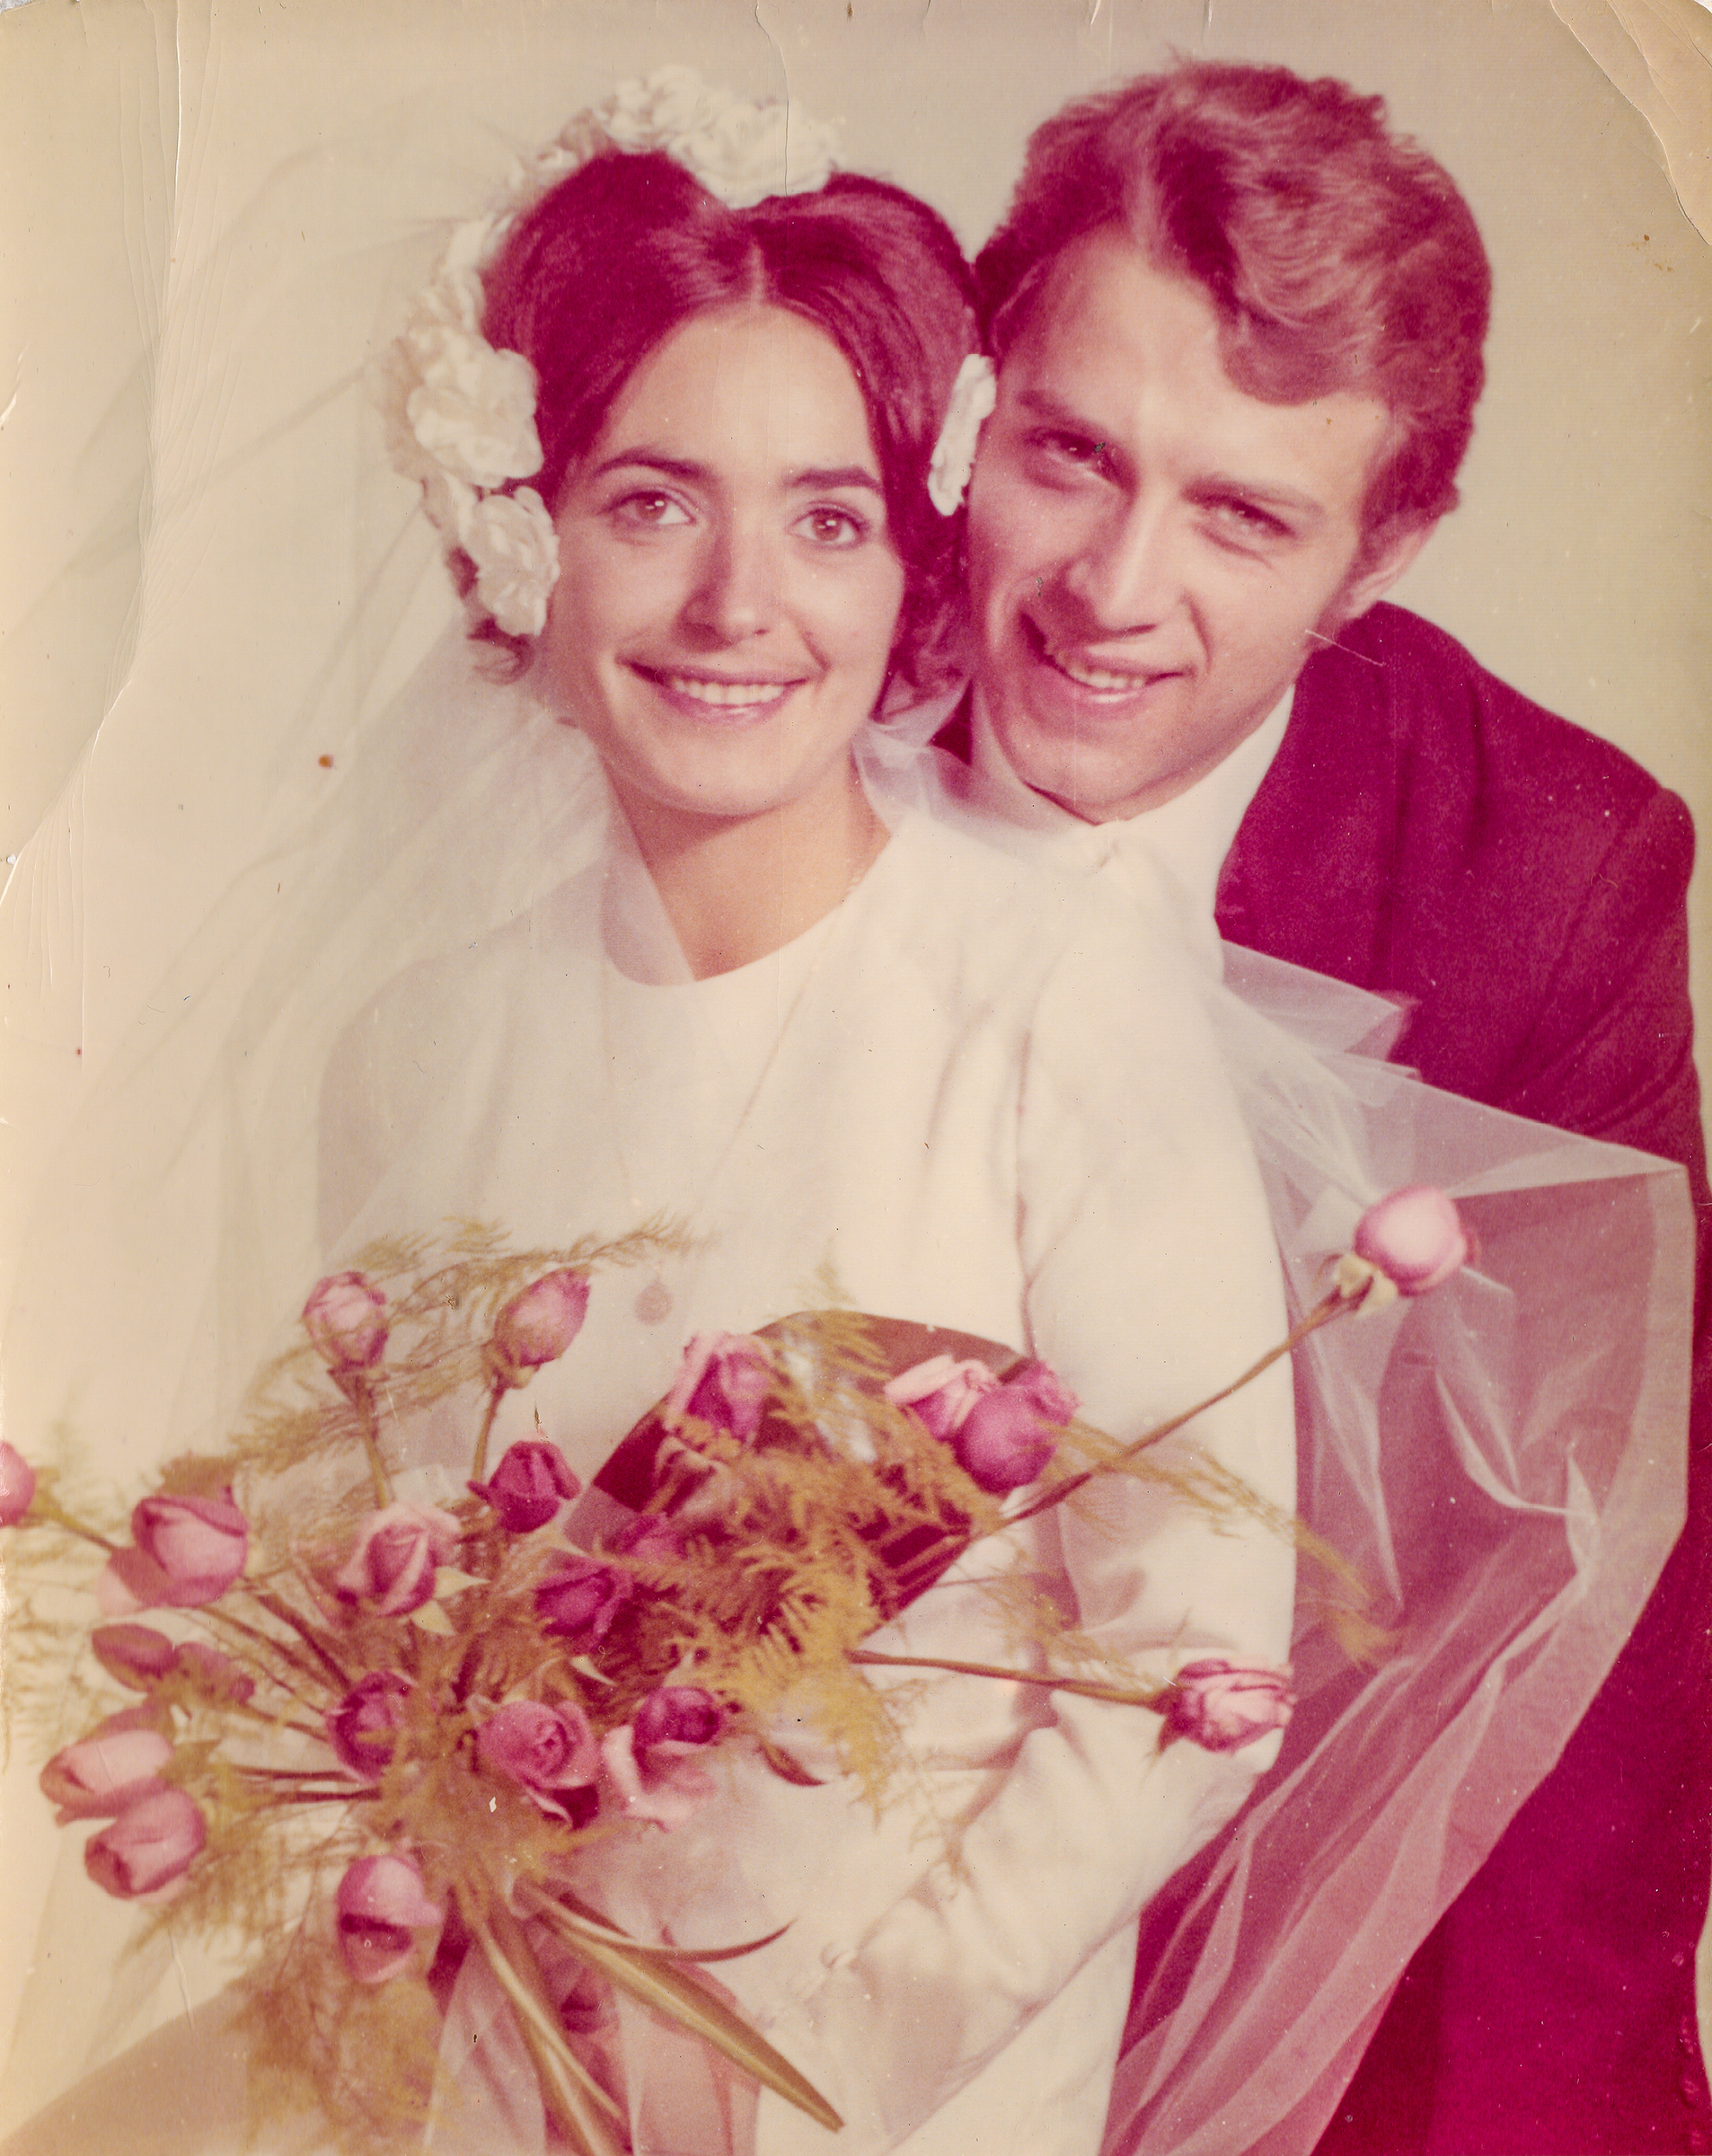 Une photo vintage d'un couple de jeunes mariés, vers 1970 | Source : Shutterstock